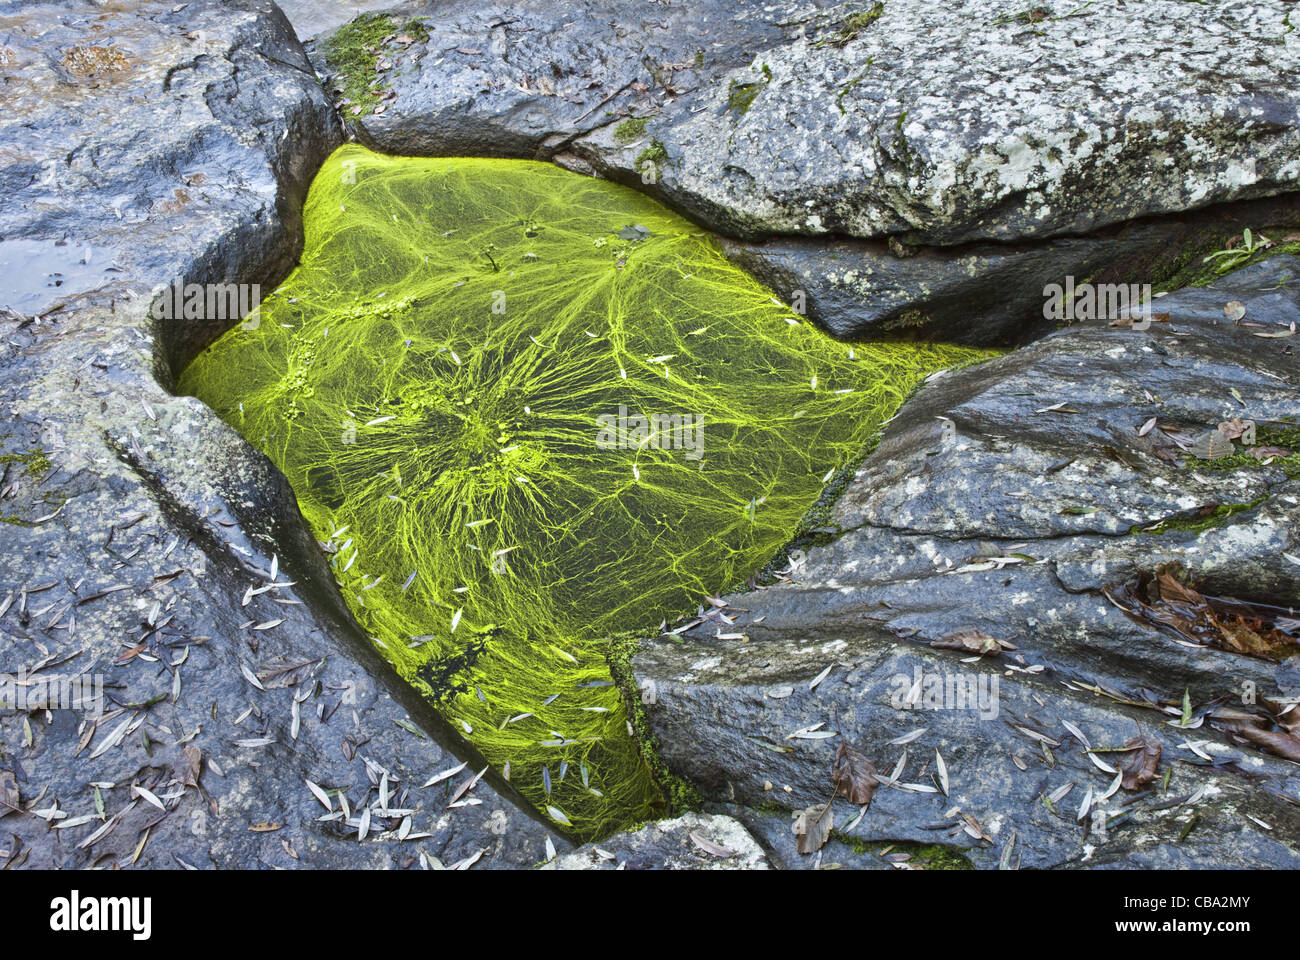 Blau - grüne Algen der Gattung Nostoc (Cyanobakterien), decken eine Pfütze von Süßwasser zwischen den Felsen. Stockfoto